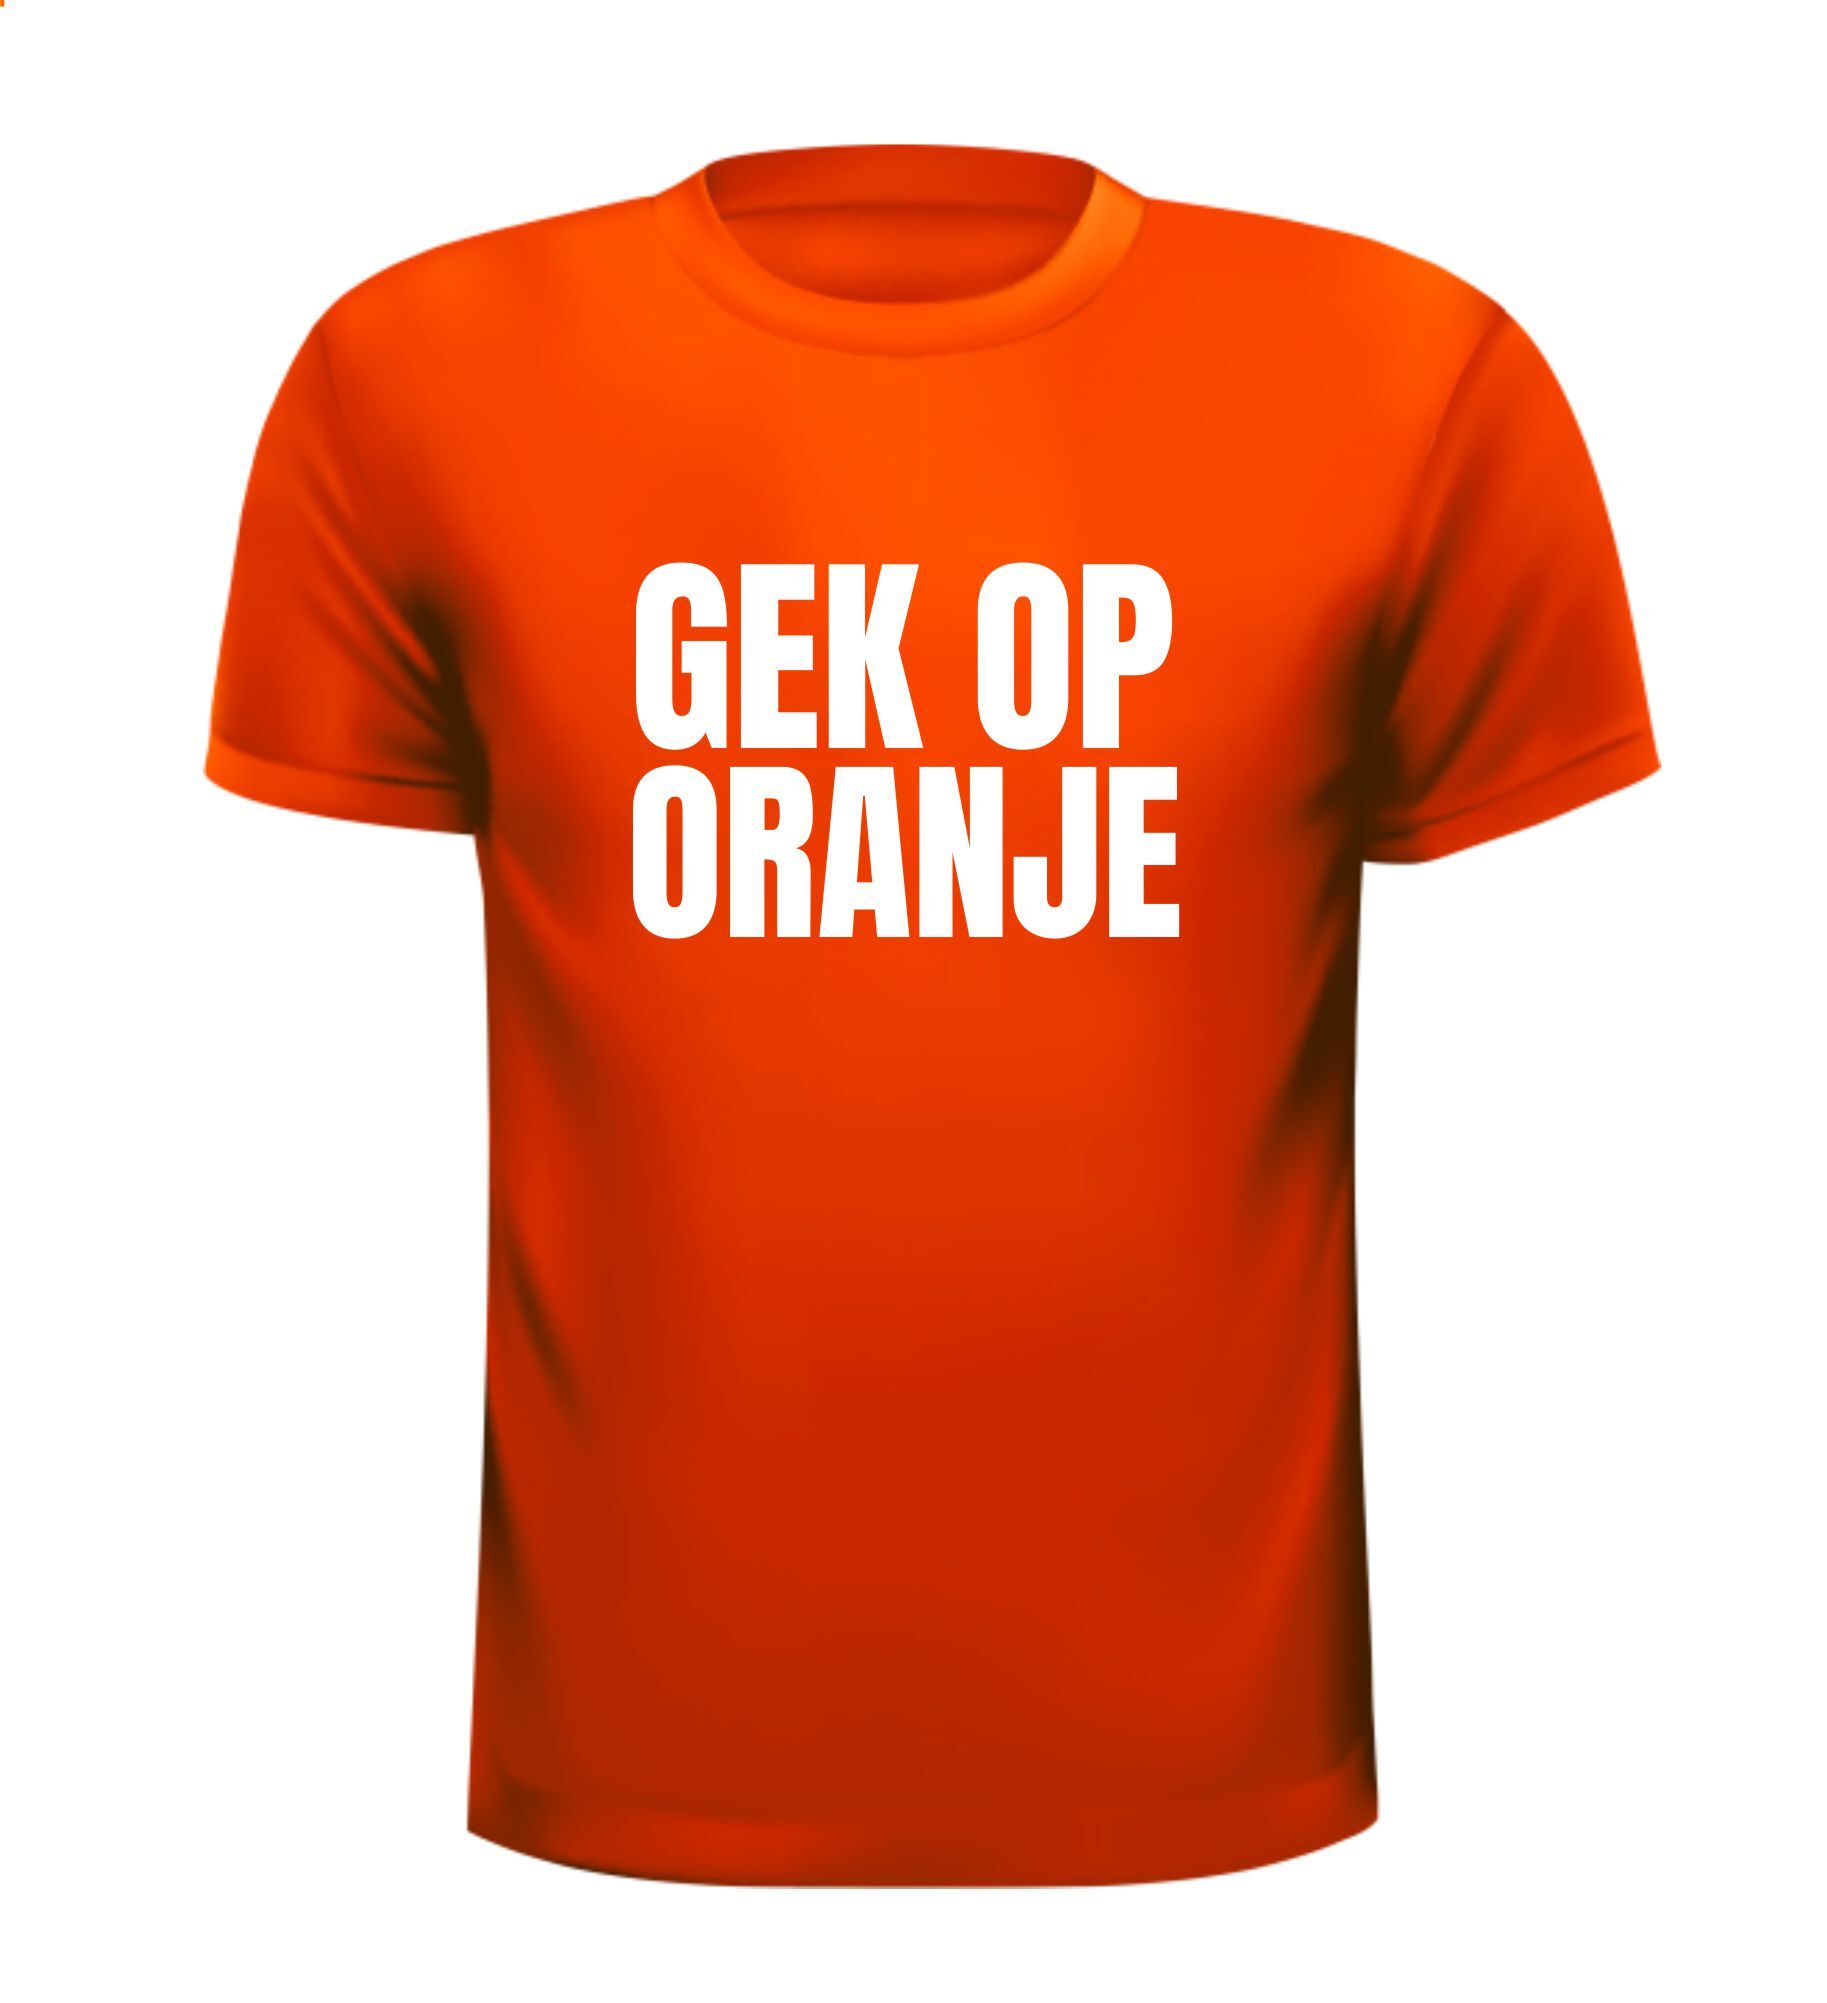 Oranje T-shirt gek op oranje